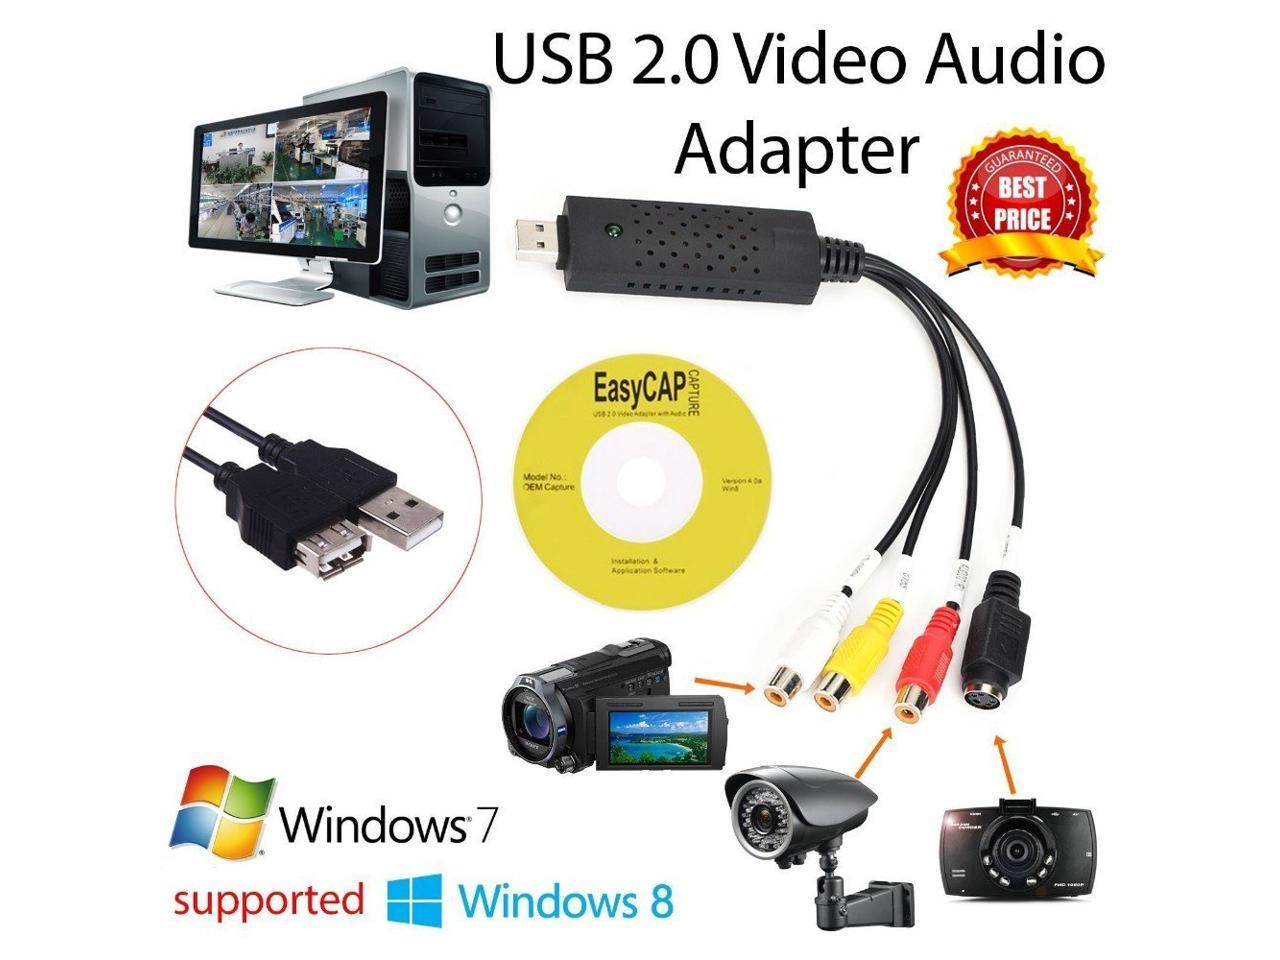 Easycap программа для захвата. USB 2.0 видеозахвата EASYCAP оцифровка видеокассет.. USB 2.0 видеозахвата EASYCAP оцифровка видеокассет. Драйвер. USB-карта видеозахвата dc60 характеристики. Карта захвата USB EASYCAP для видеозахвата.